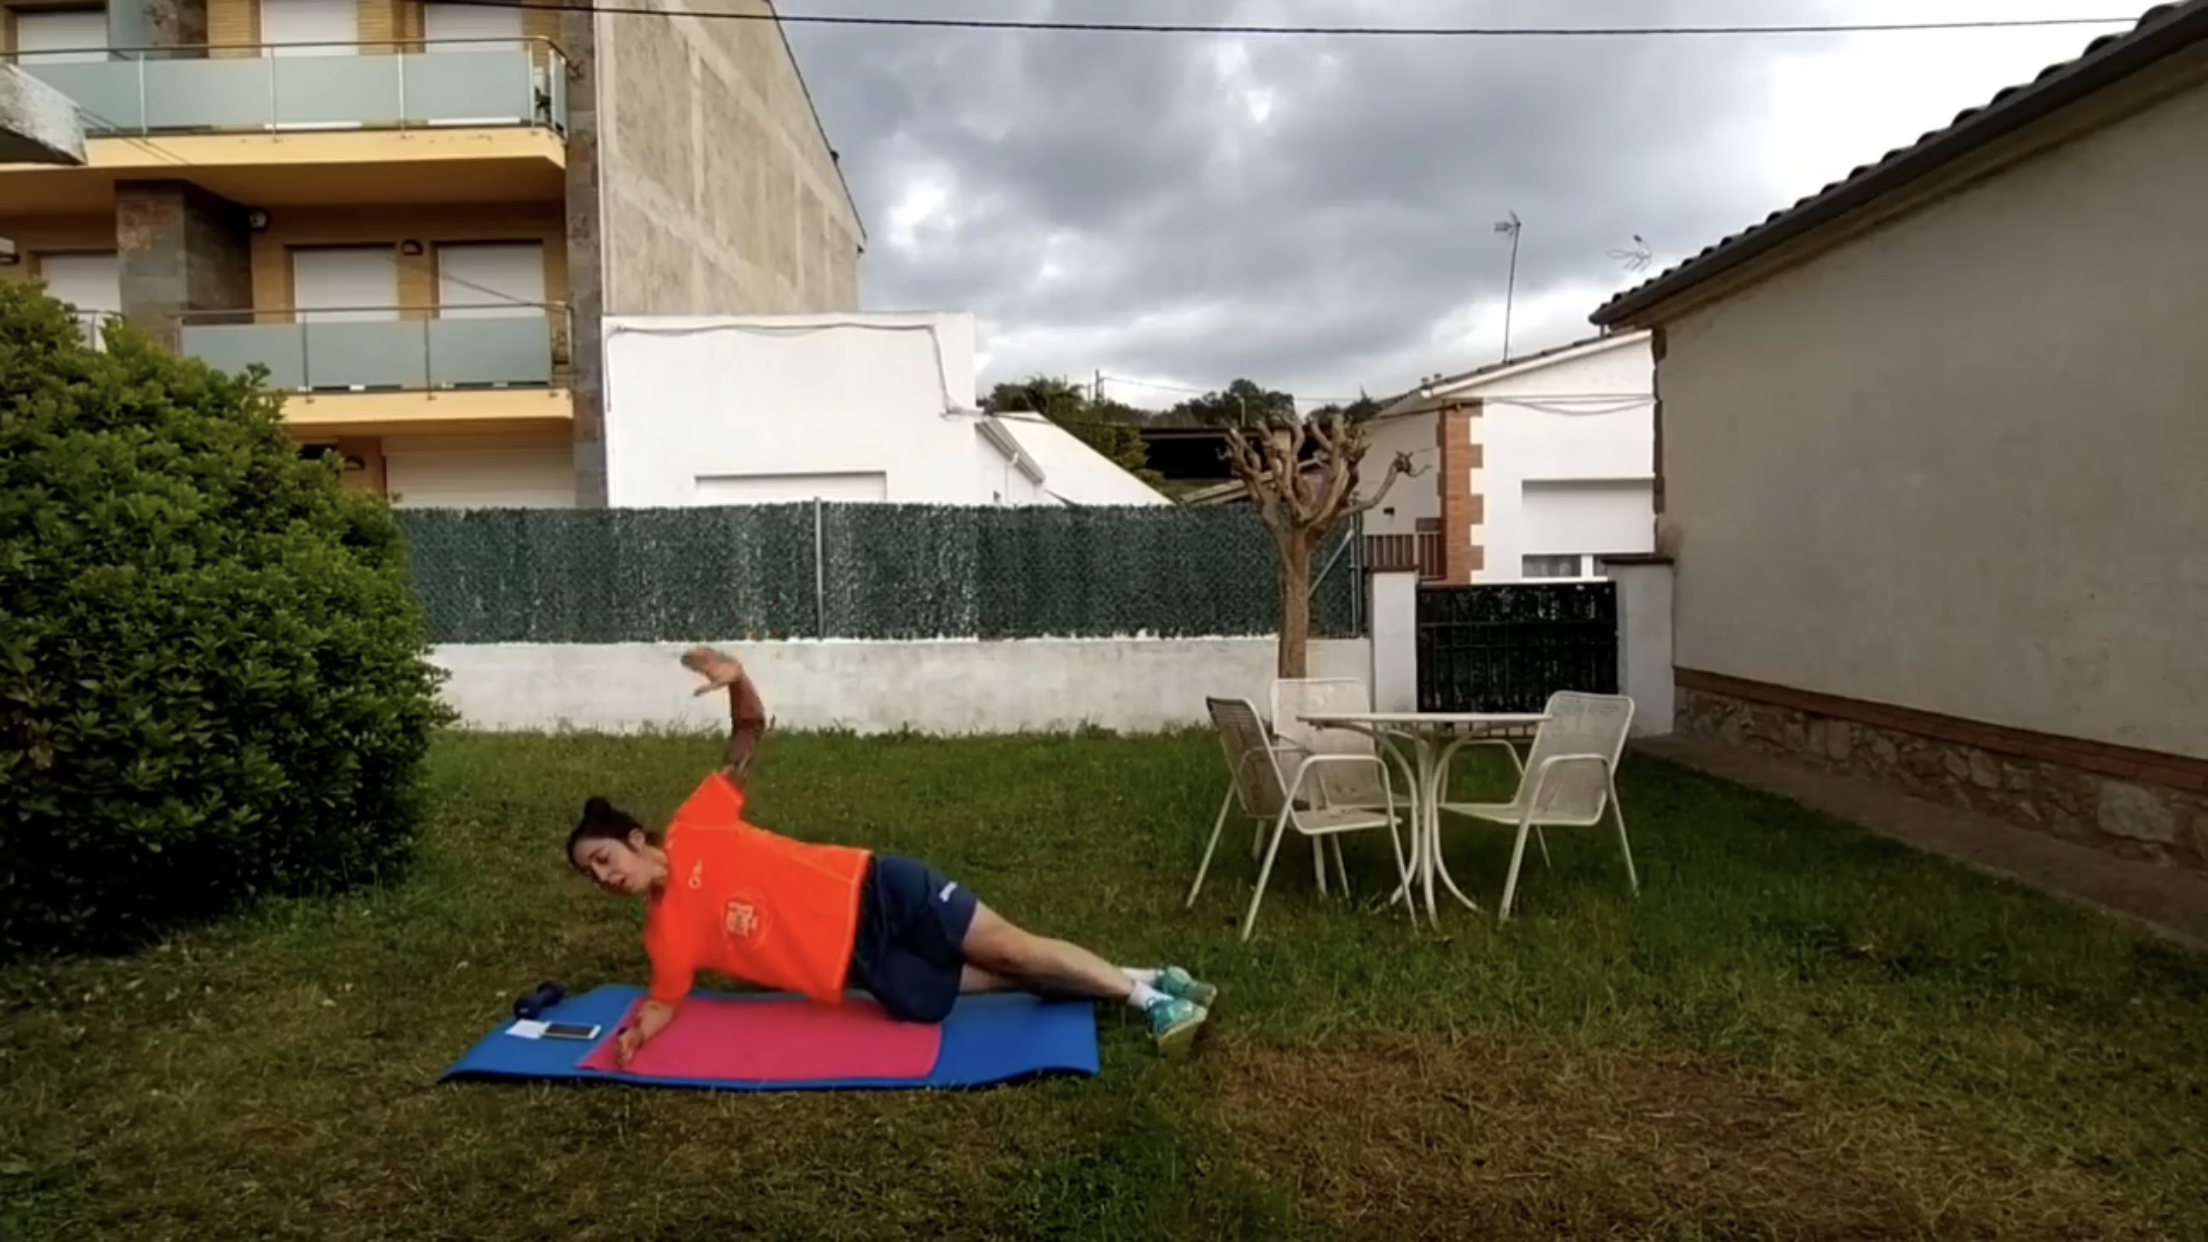 Sonia Noell realitzant un exercici d'entrenament del core